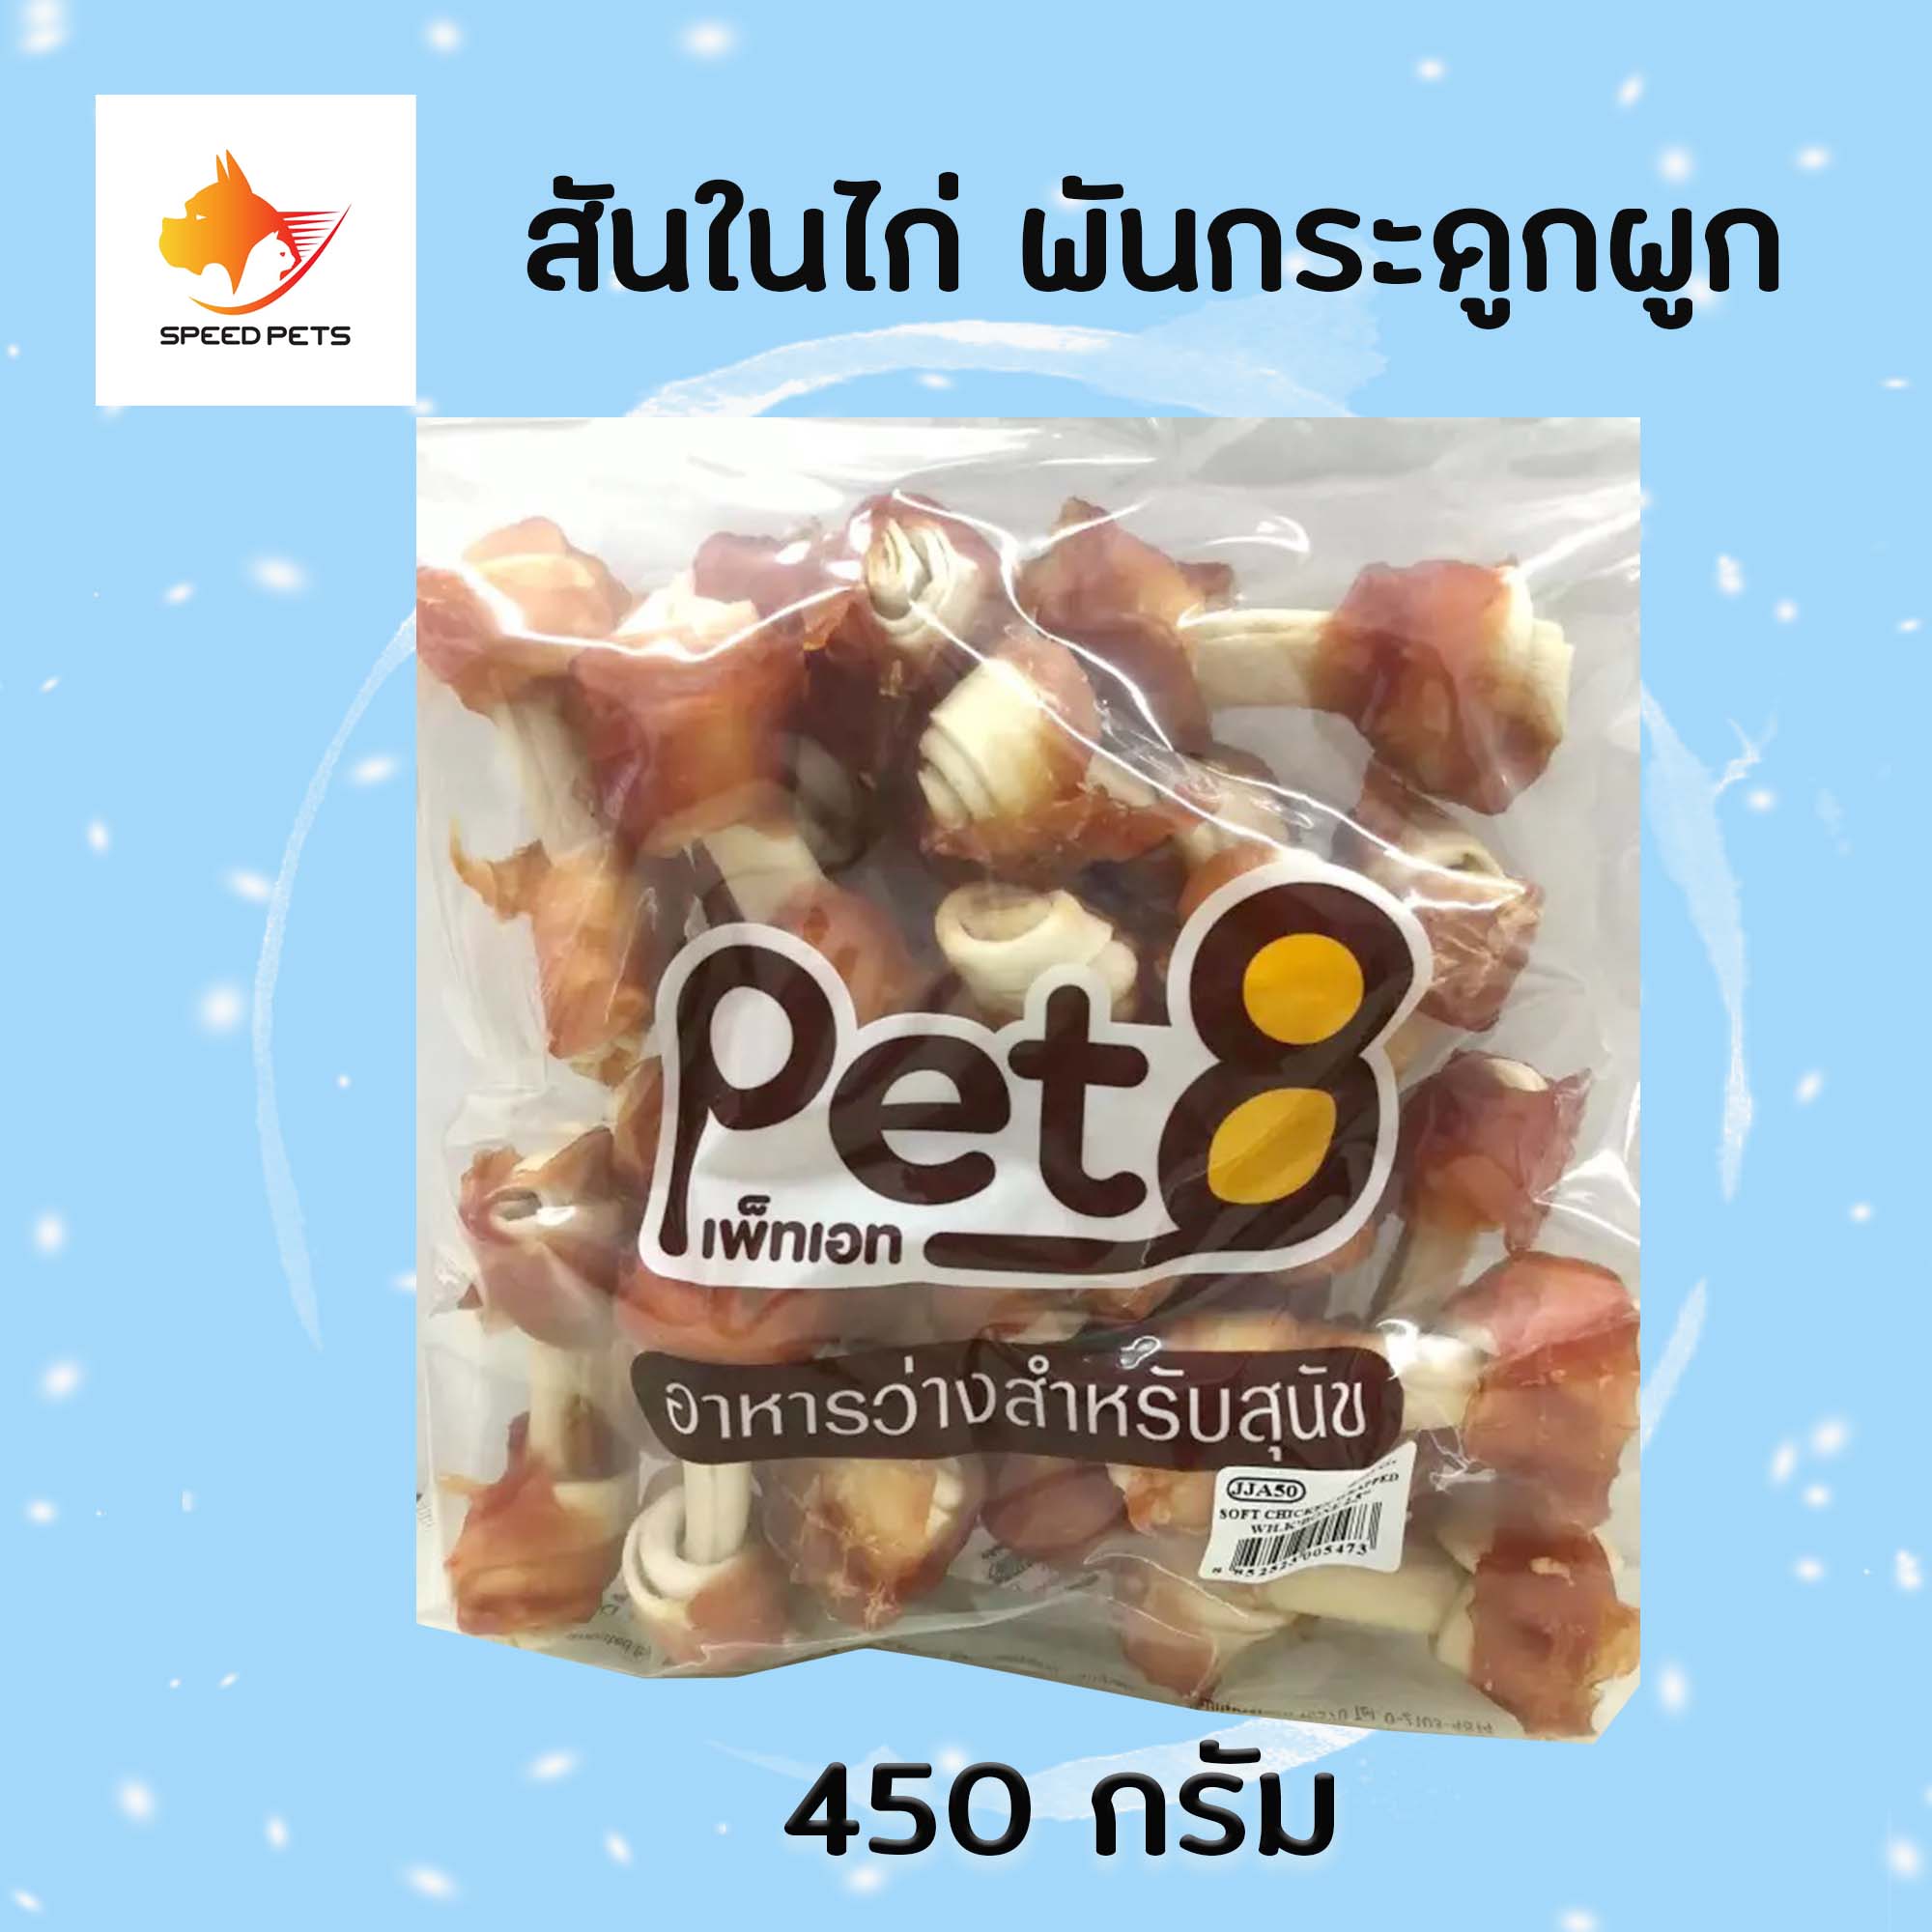 Pet8 dog snack ขนมสุนัข สันในไก่ พันกระดูกผูก ขนาด 2 นิ้ว ขนาด 450 กรัม